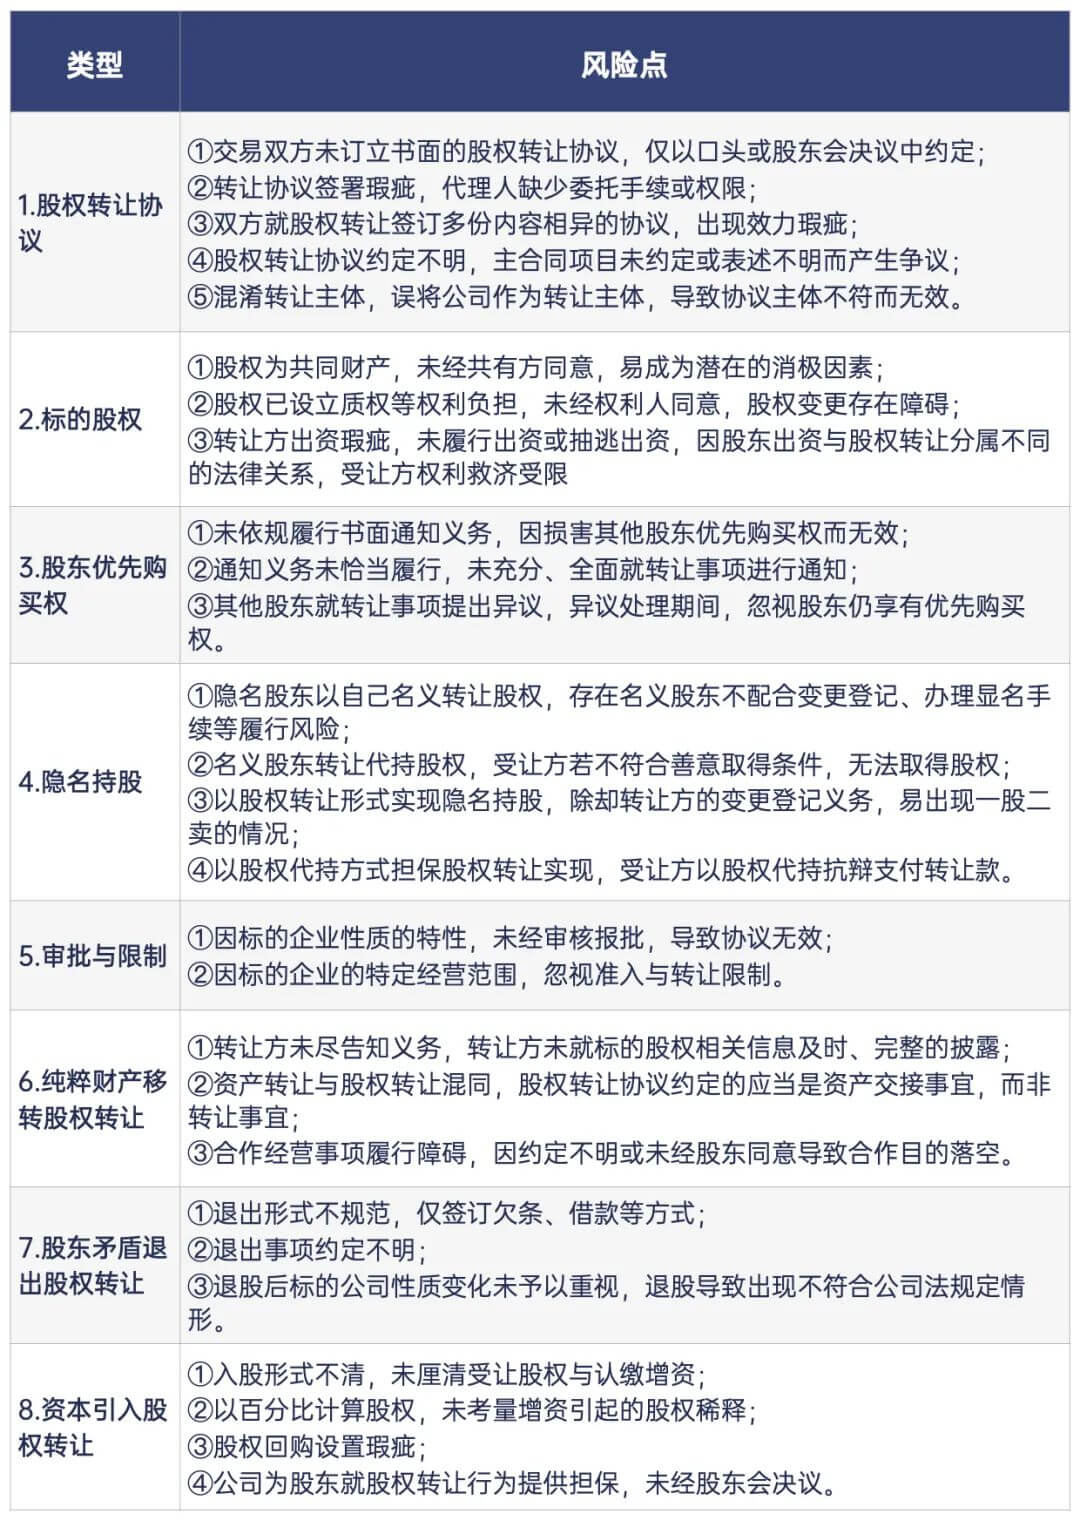 上海二中院《2014-2018股权转让纠纷案件审判白皮书》